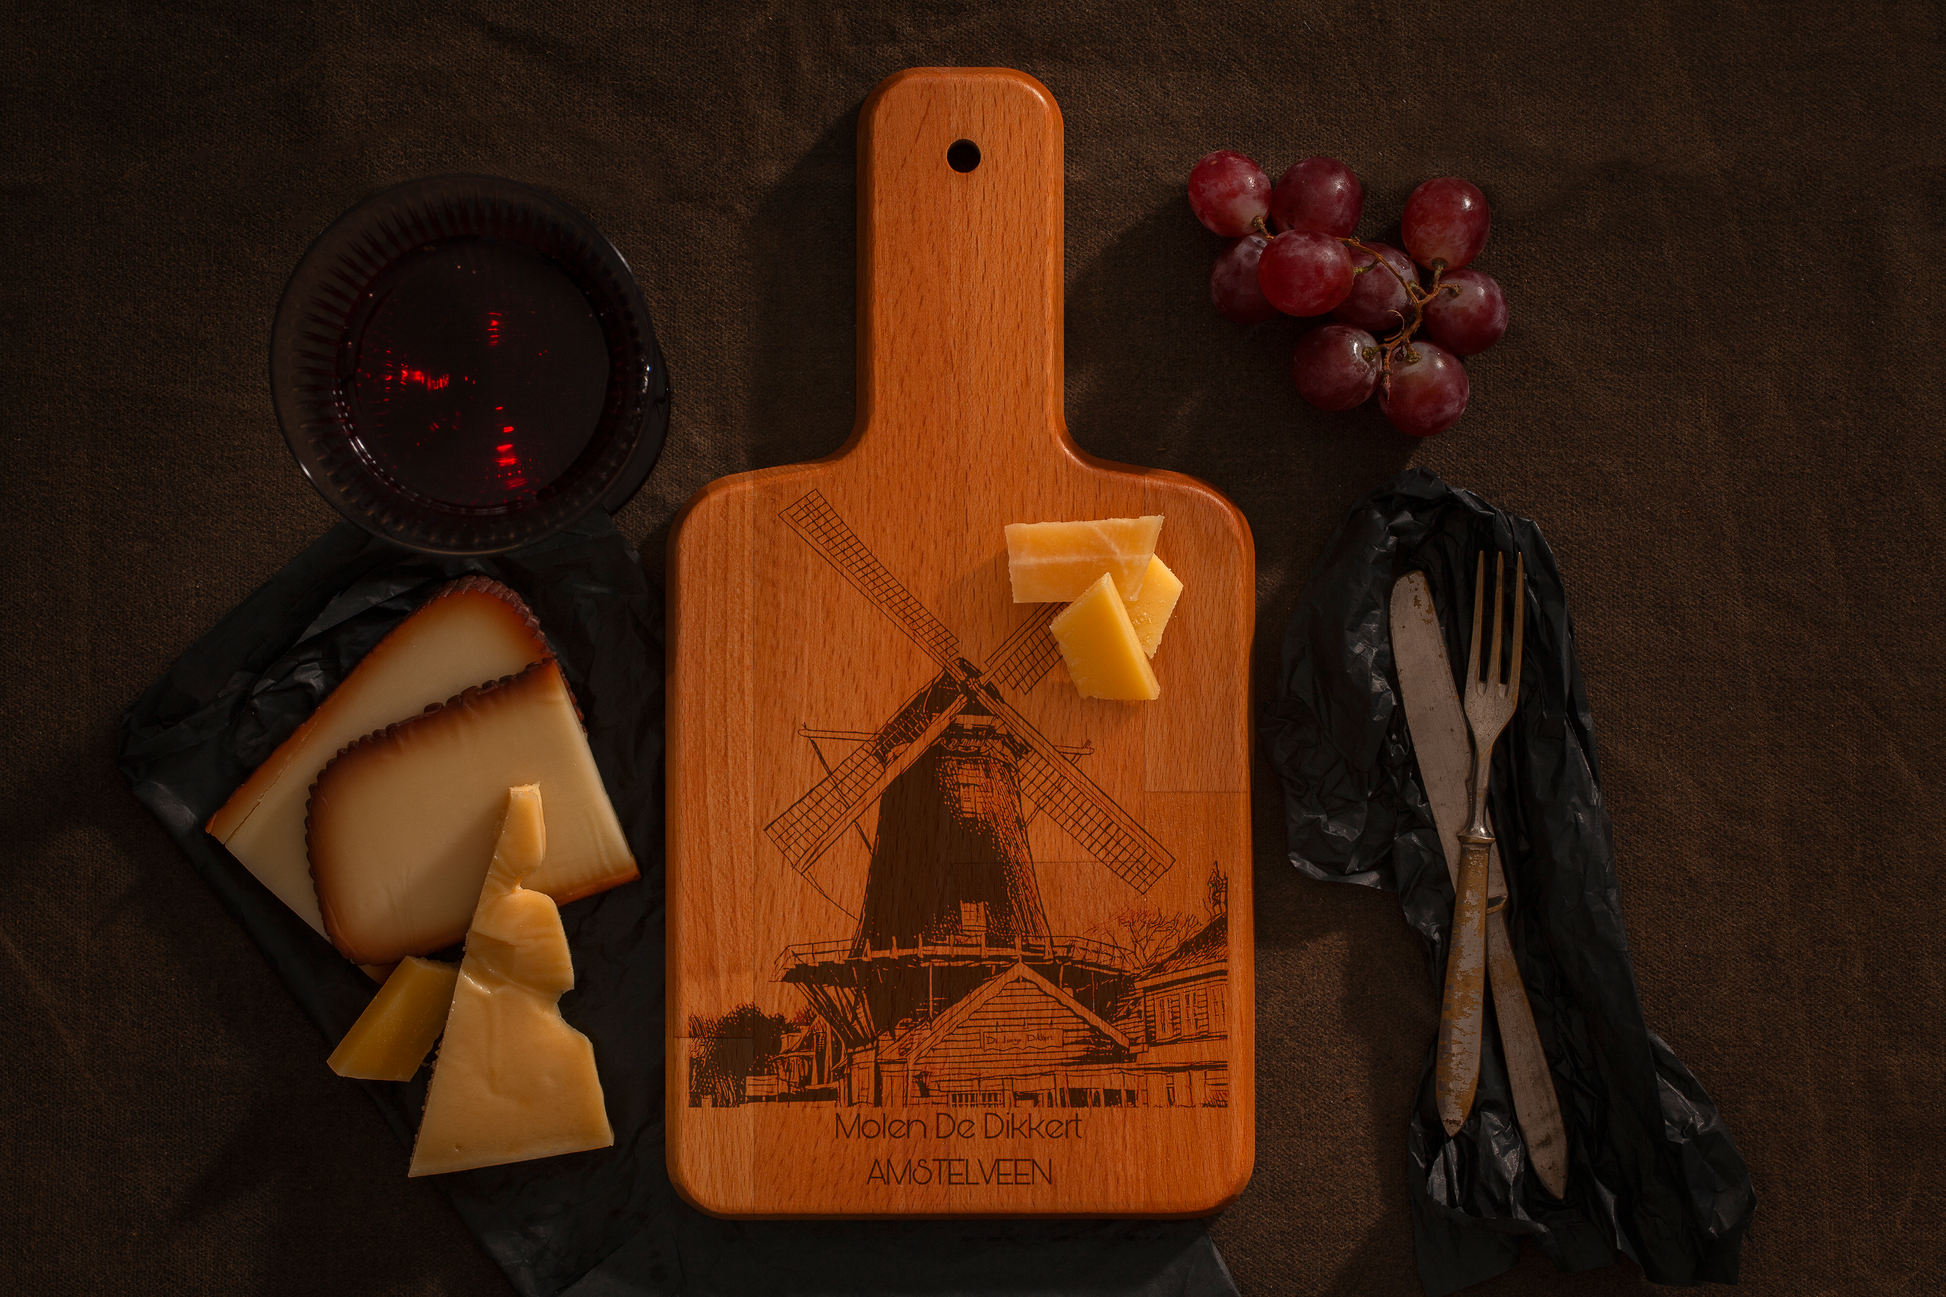 Amstelveen, Molen De Dikkert, cheese board, with cheese